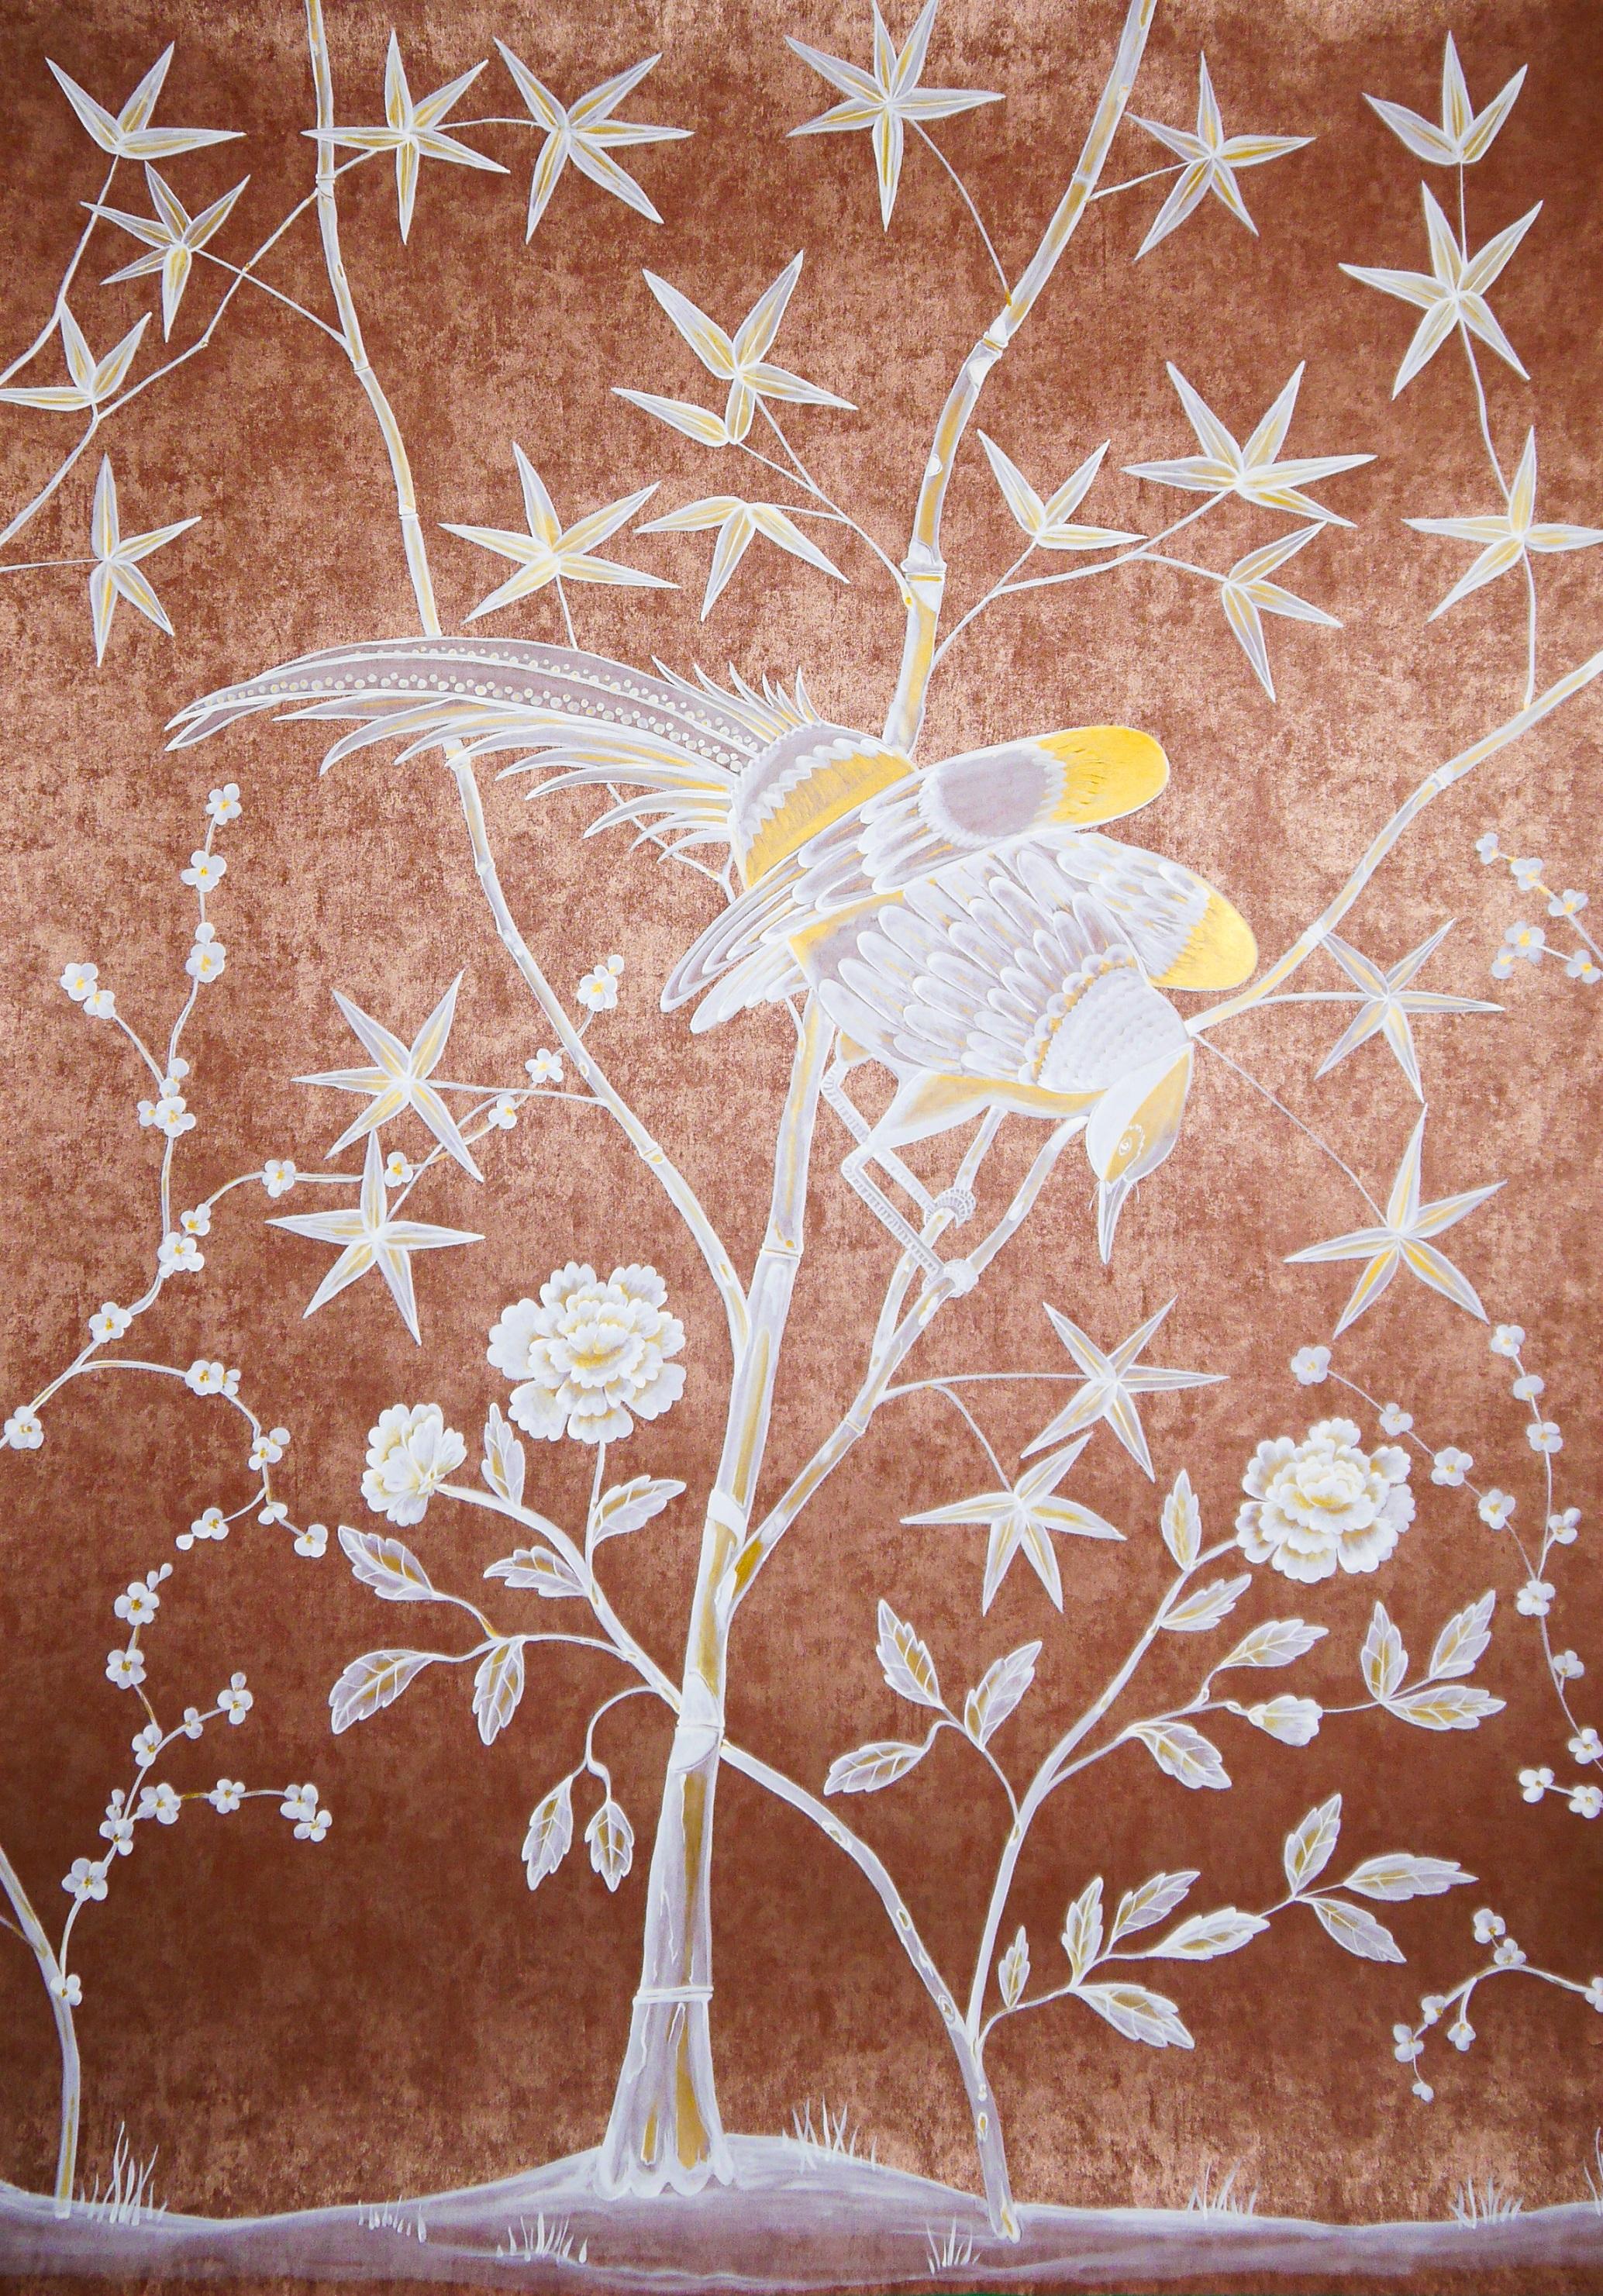 Caledon: exotische Vögel und Bambus auf rot-goldenem Metallic-Hintergrund, inspiriert von Caledon original. Ein Satz von drei Tafeln.

Eine individuelle Bestellung, mehrere Farben des Hintergrunds und der Größe sind möglich.
Sie können wählen, ob